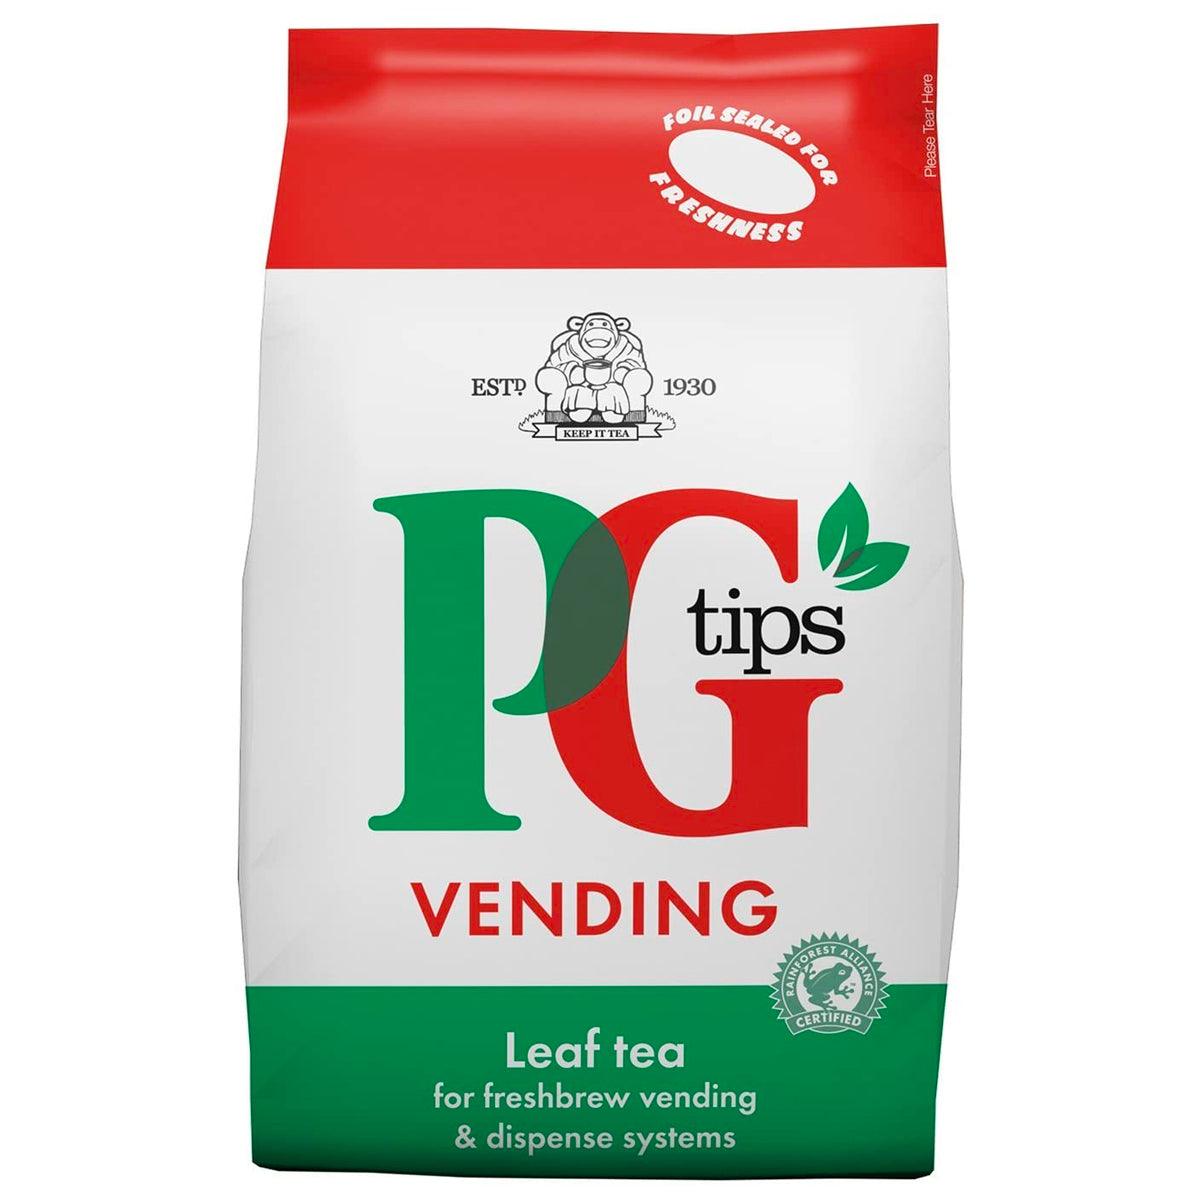 PG Tips Leaf Tea For Vending - 6 x 1kg Bag - Vending Superstore